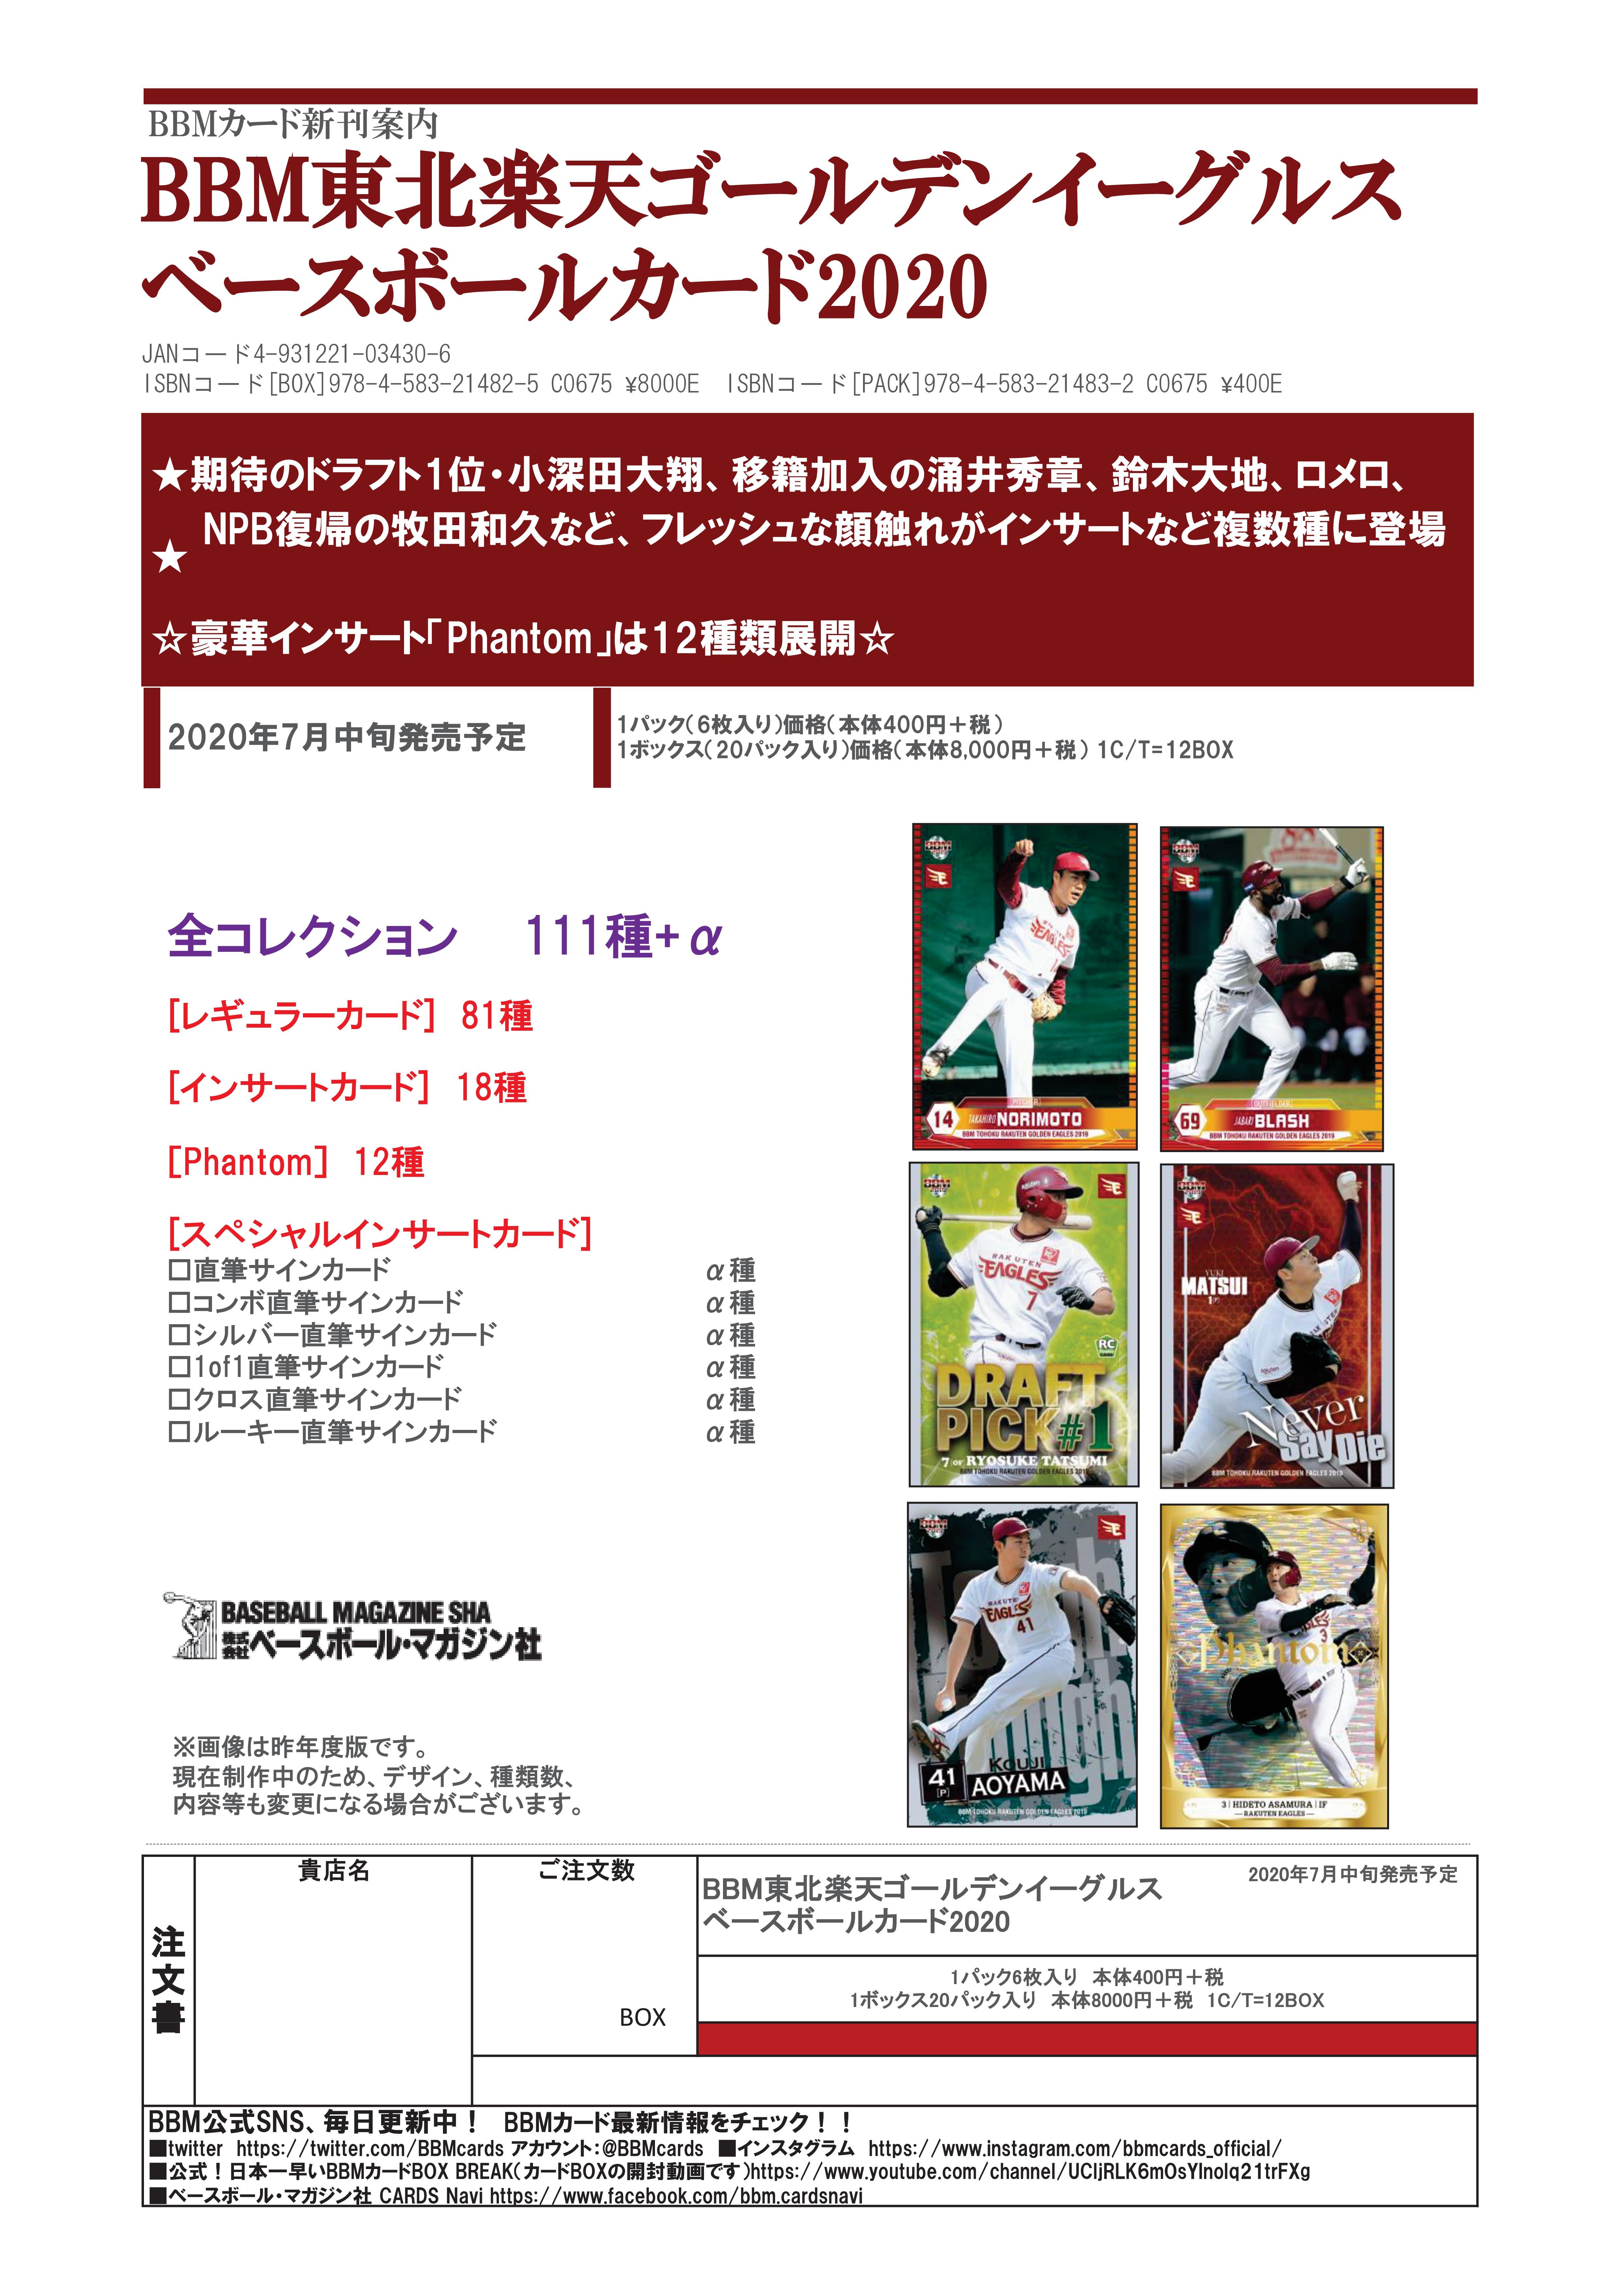 リスト公開！ 7月10日発売 BBM 楽天イーグルス・ベースボールカード 